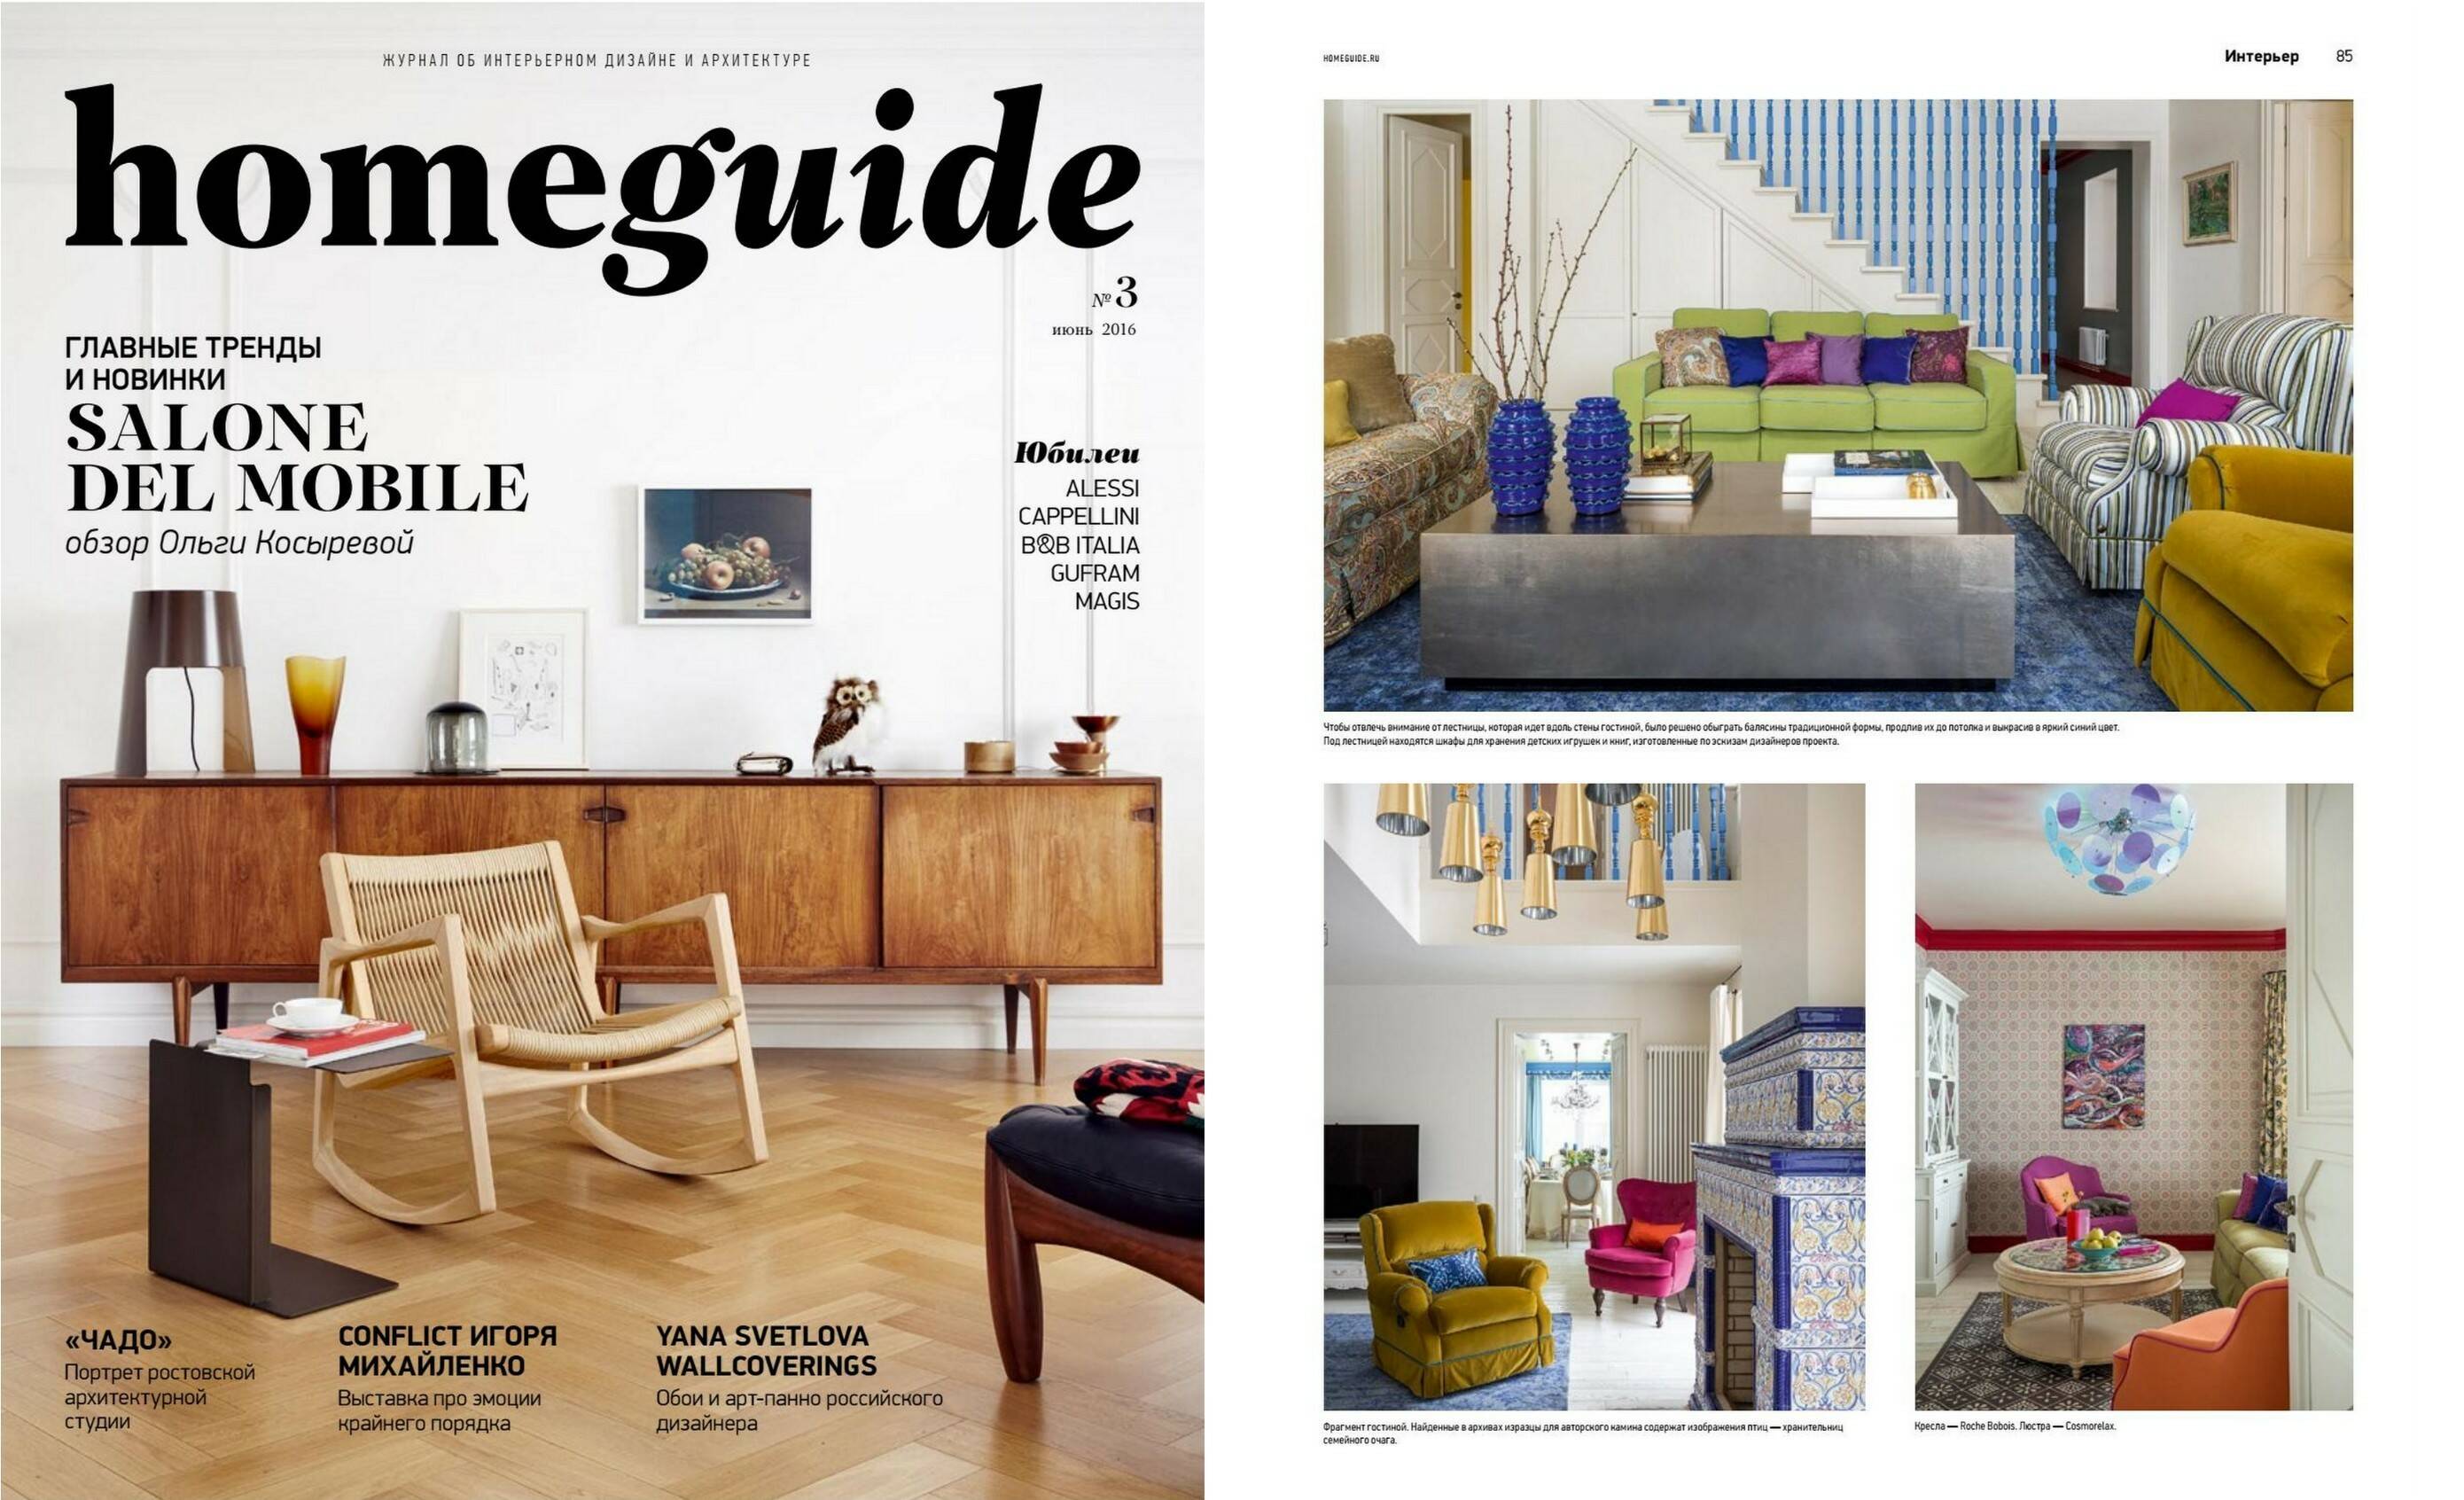 Интерьер с мебелью и светом Cosmorelax в #3 журнала «Homeguide» 2016 г.